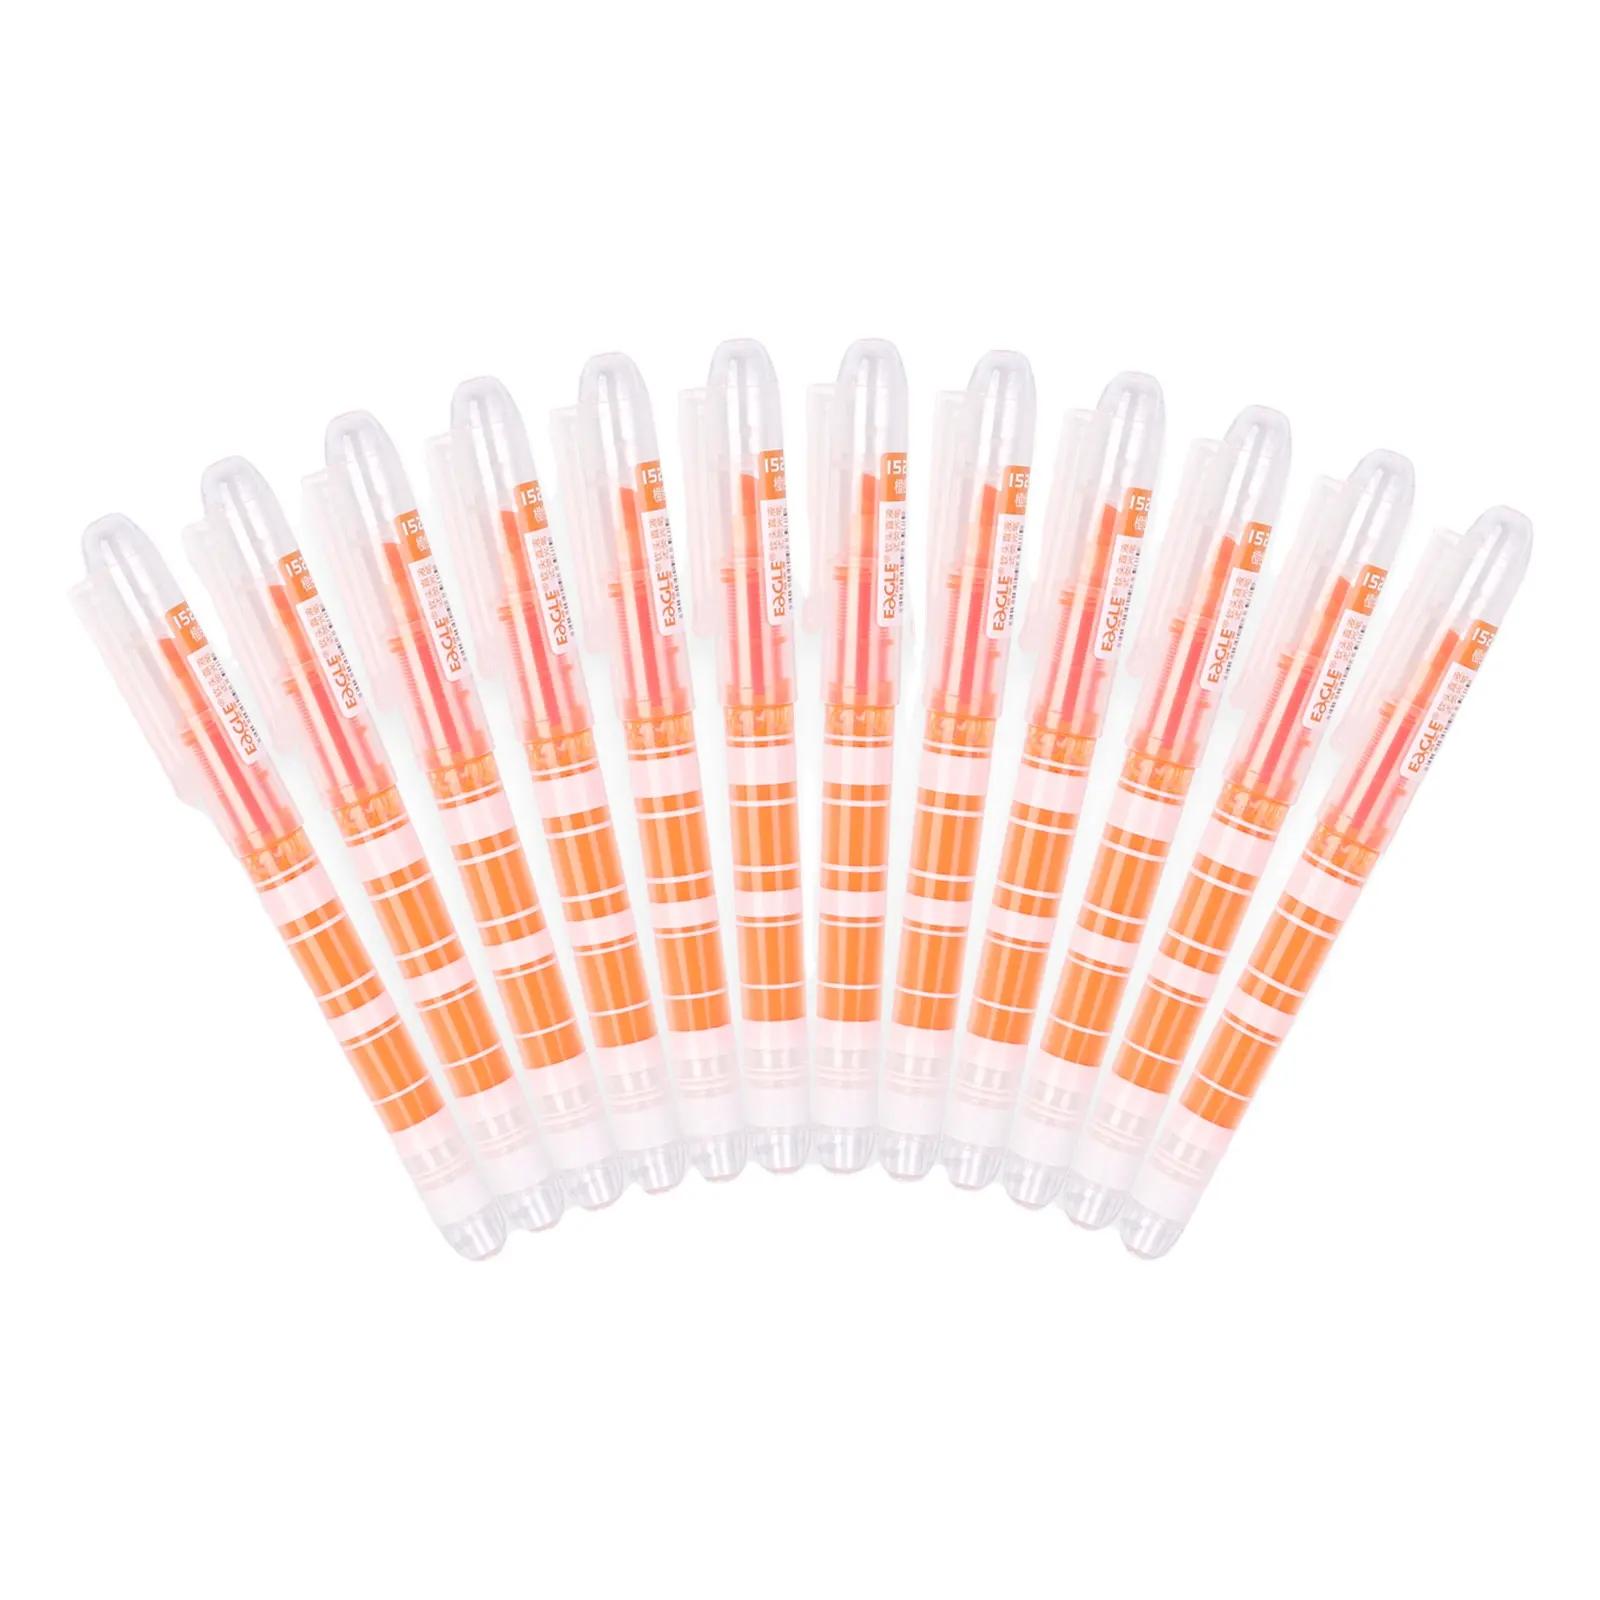 EAGLE Lot de stylos surligneurs en plastique orange pour sthool à des prix abordables